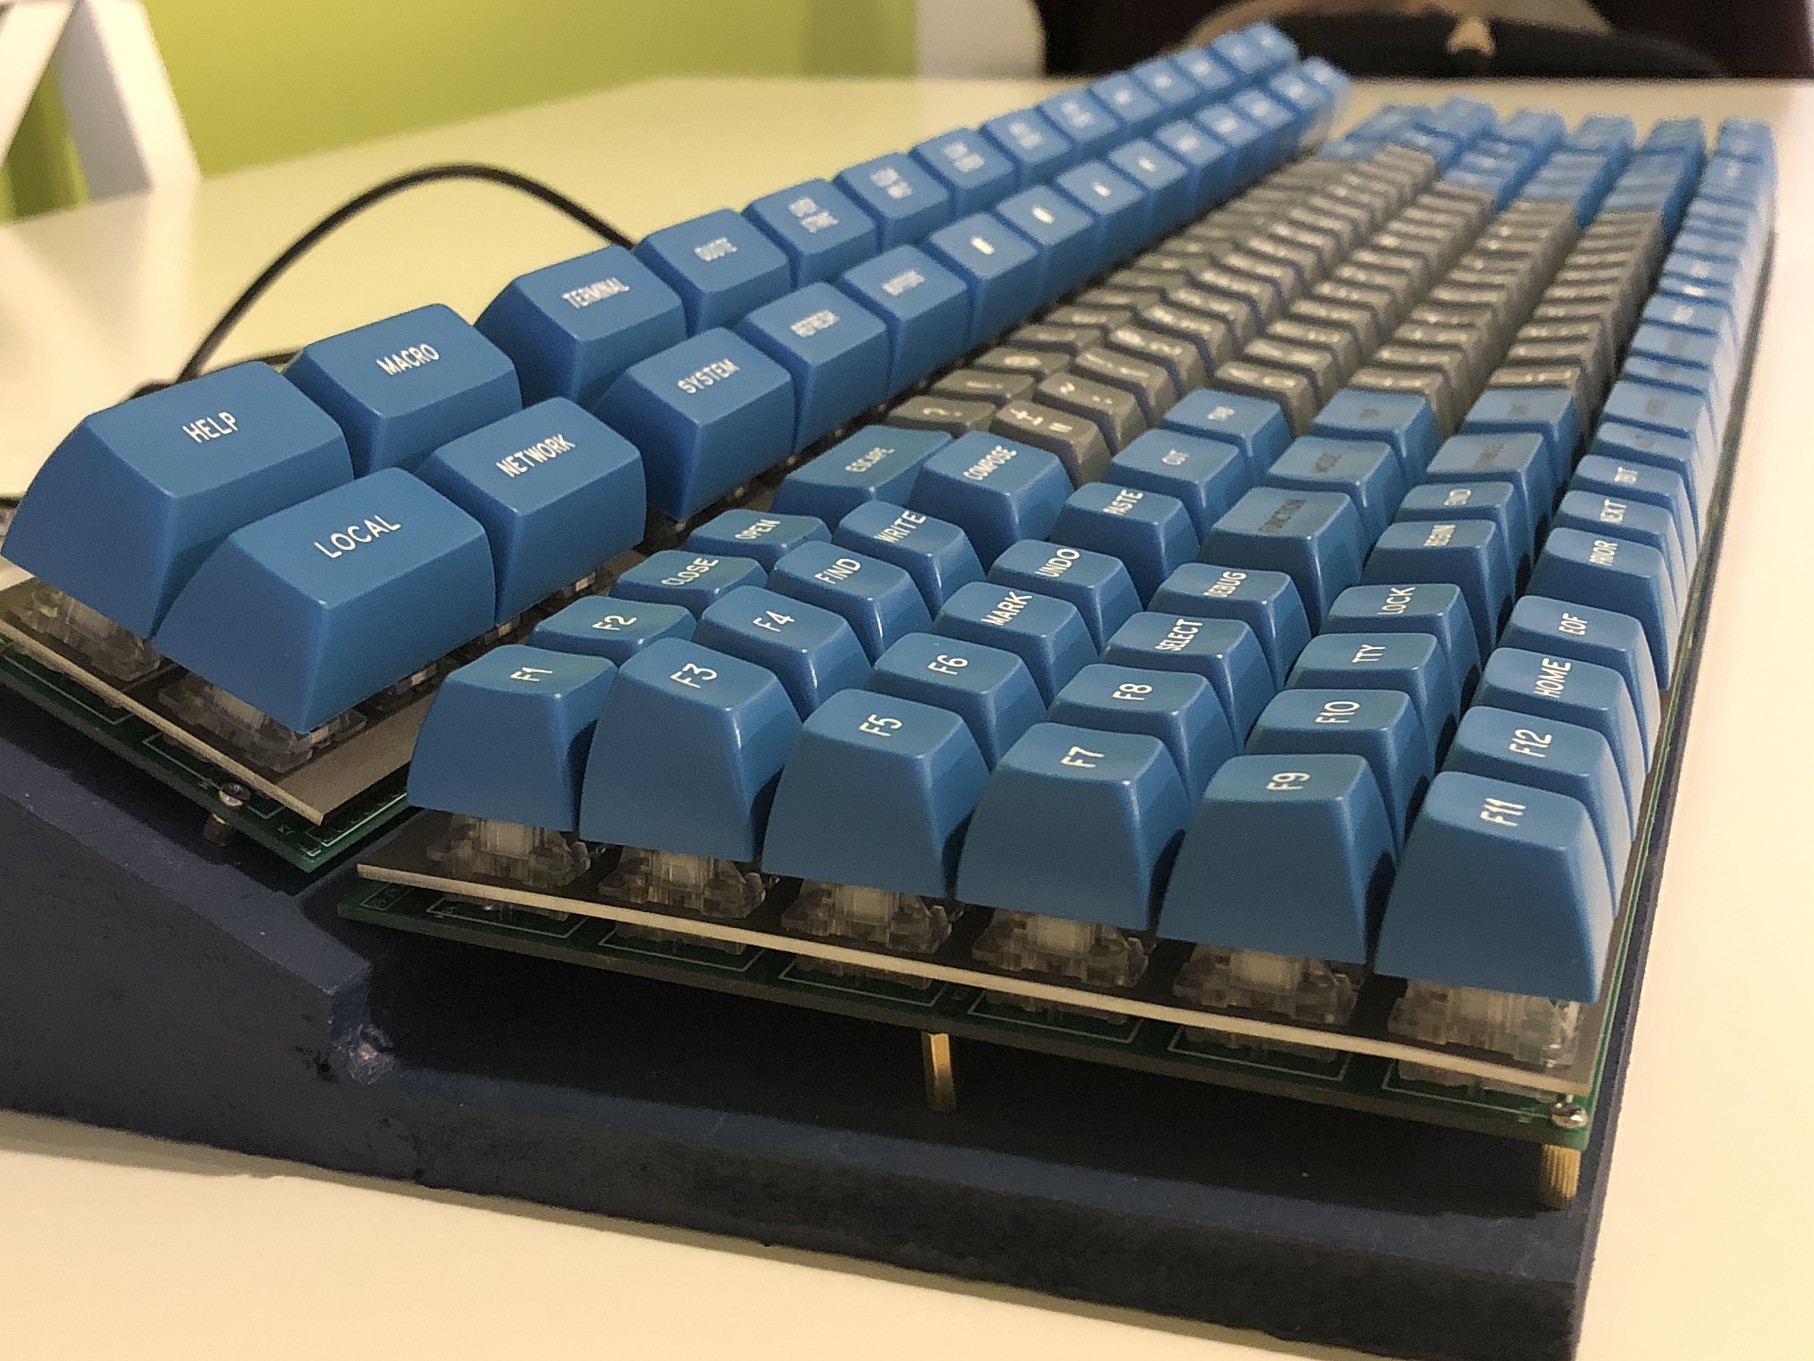 hyper 7 keyboard tq8v2